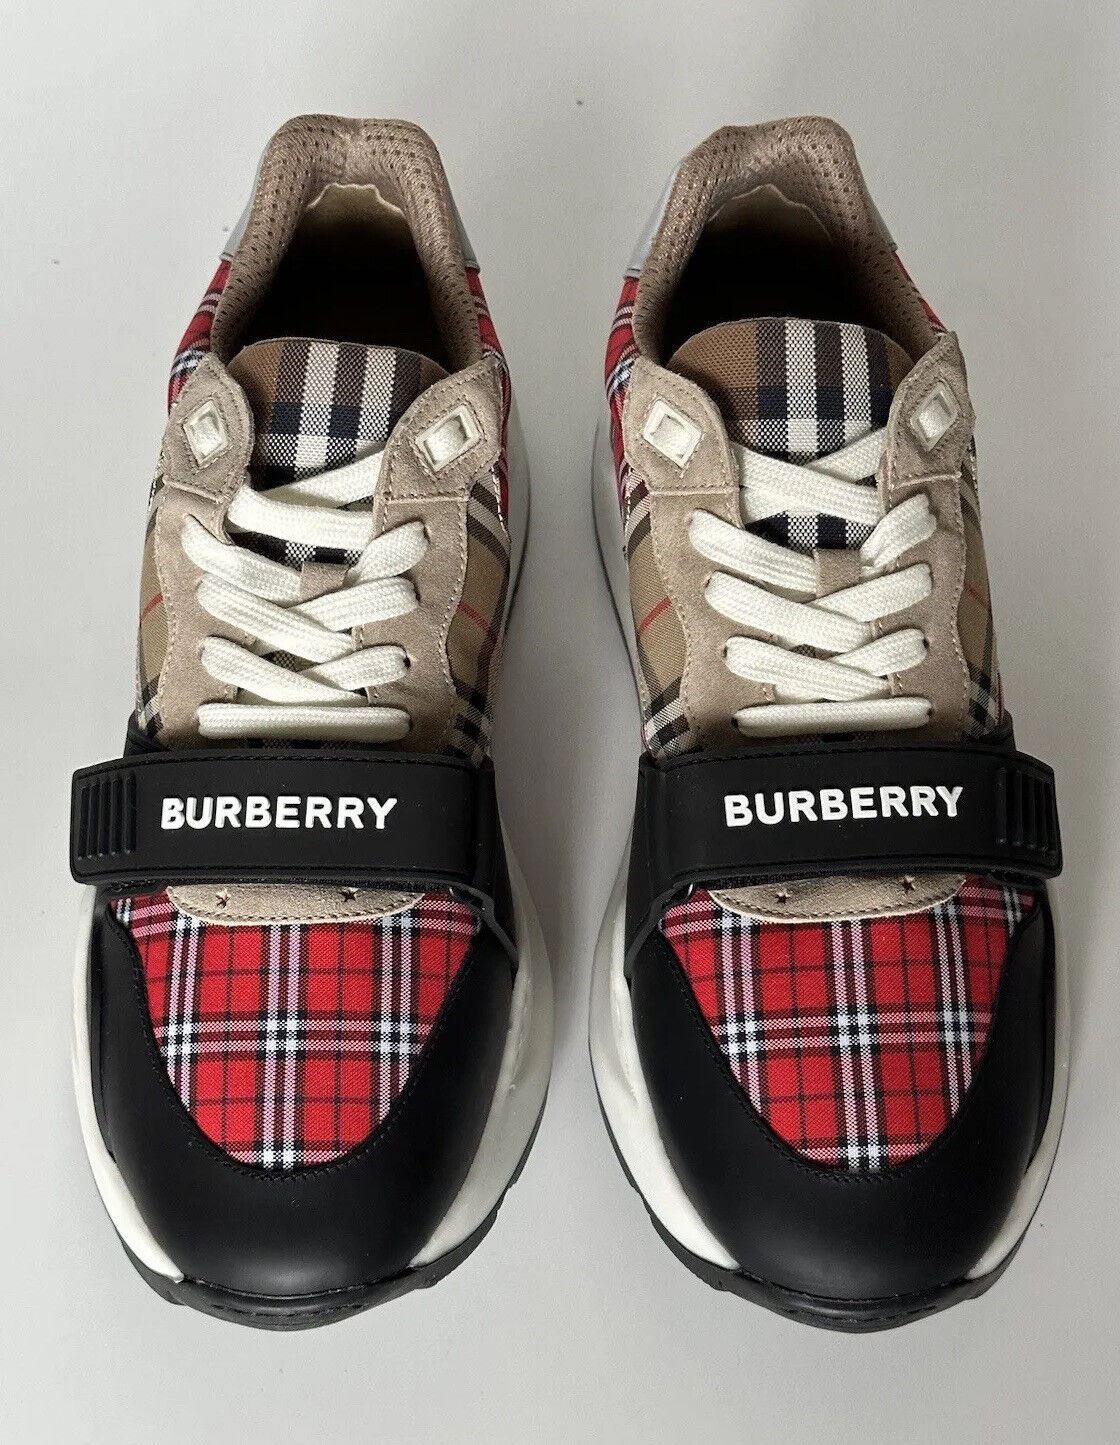 Мужские разноцветные кроссовки Burberry Ramsey стоимостью 790 долларов США 9,5 США (42,5) 8048632 Италия 